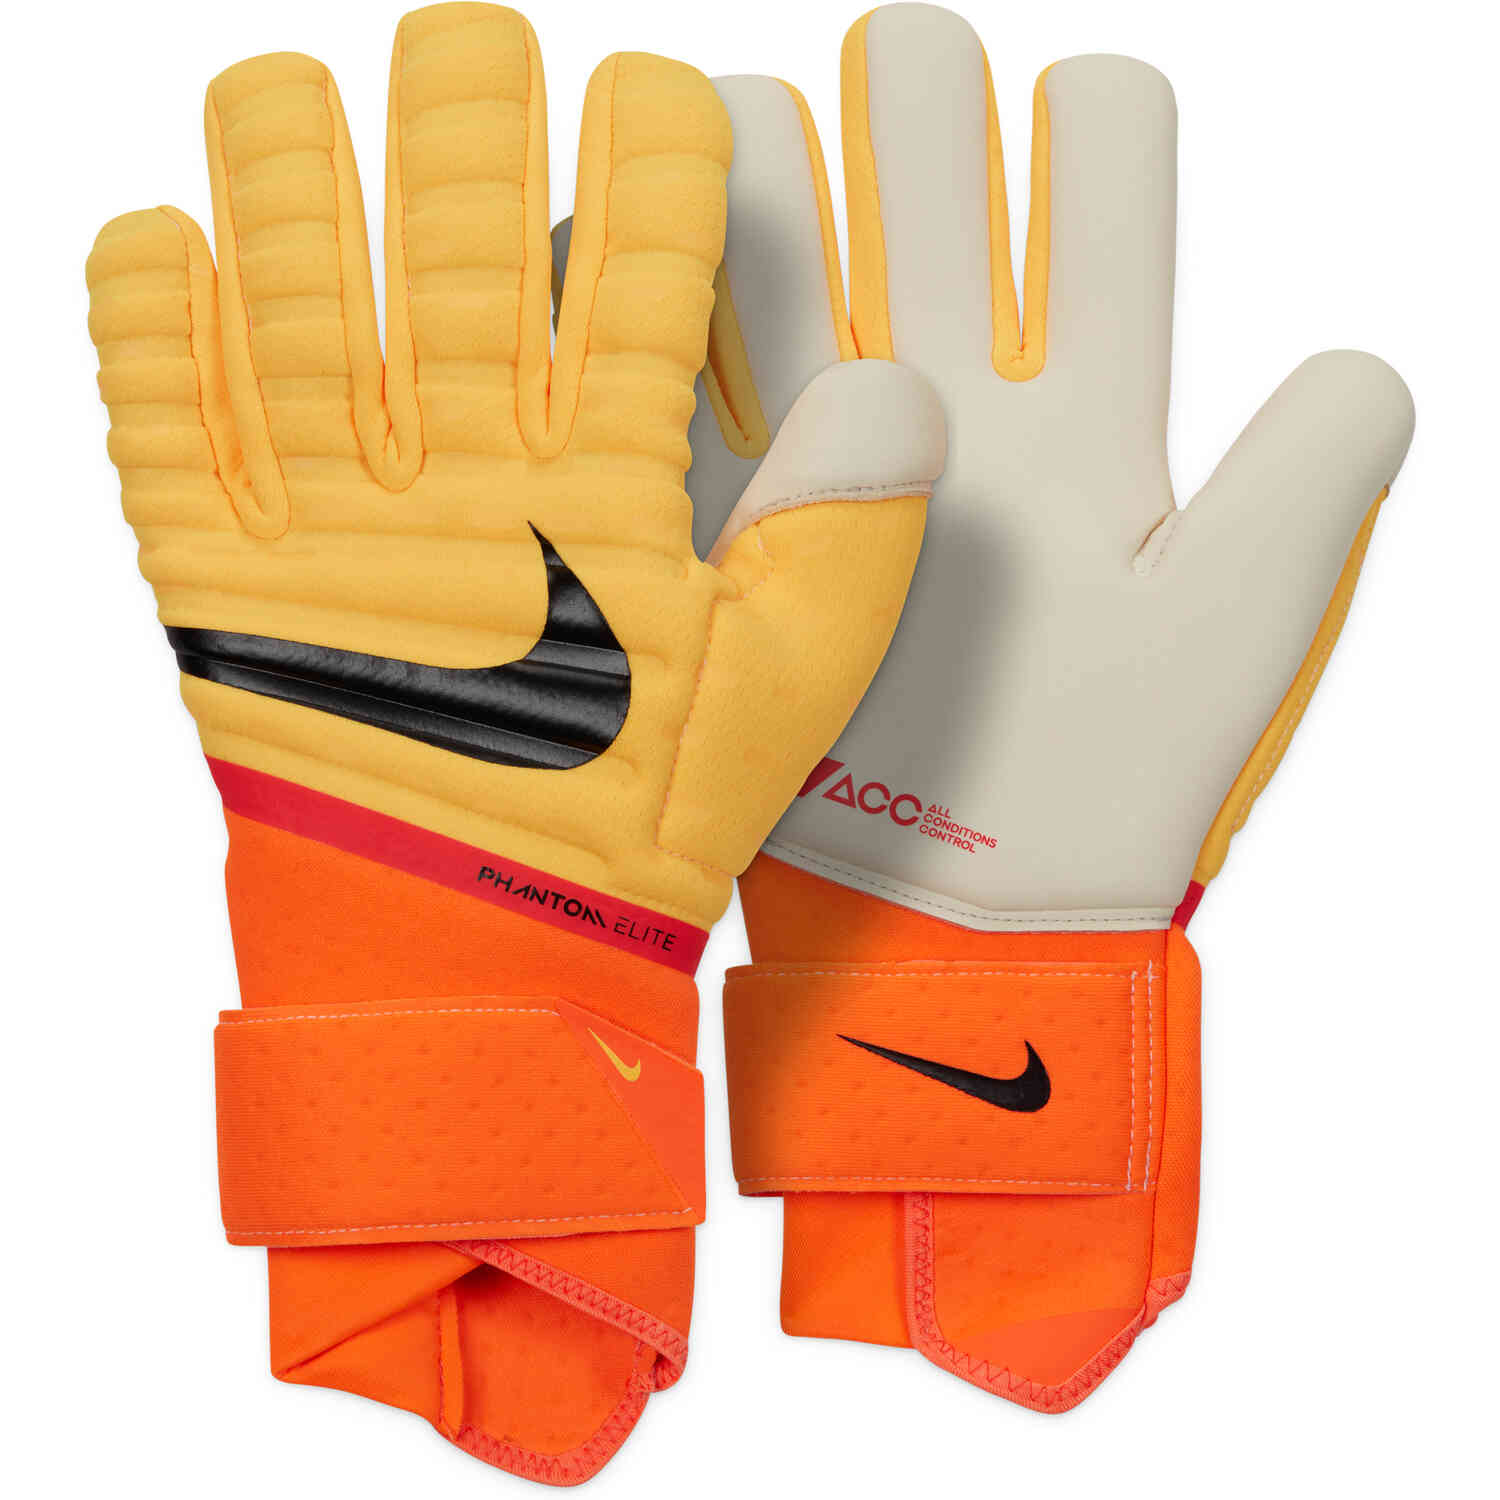 Nike Phantom Elite Goalkeeper Gloves - Laser Orange, Total Orange & Black -  Soccer Master